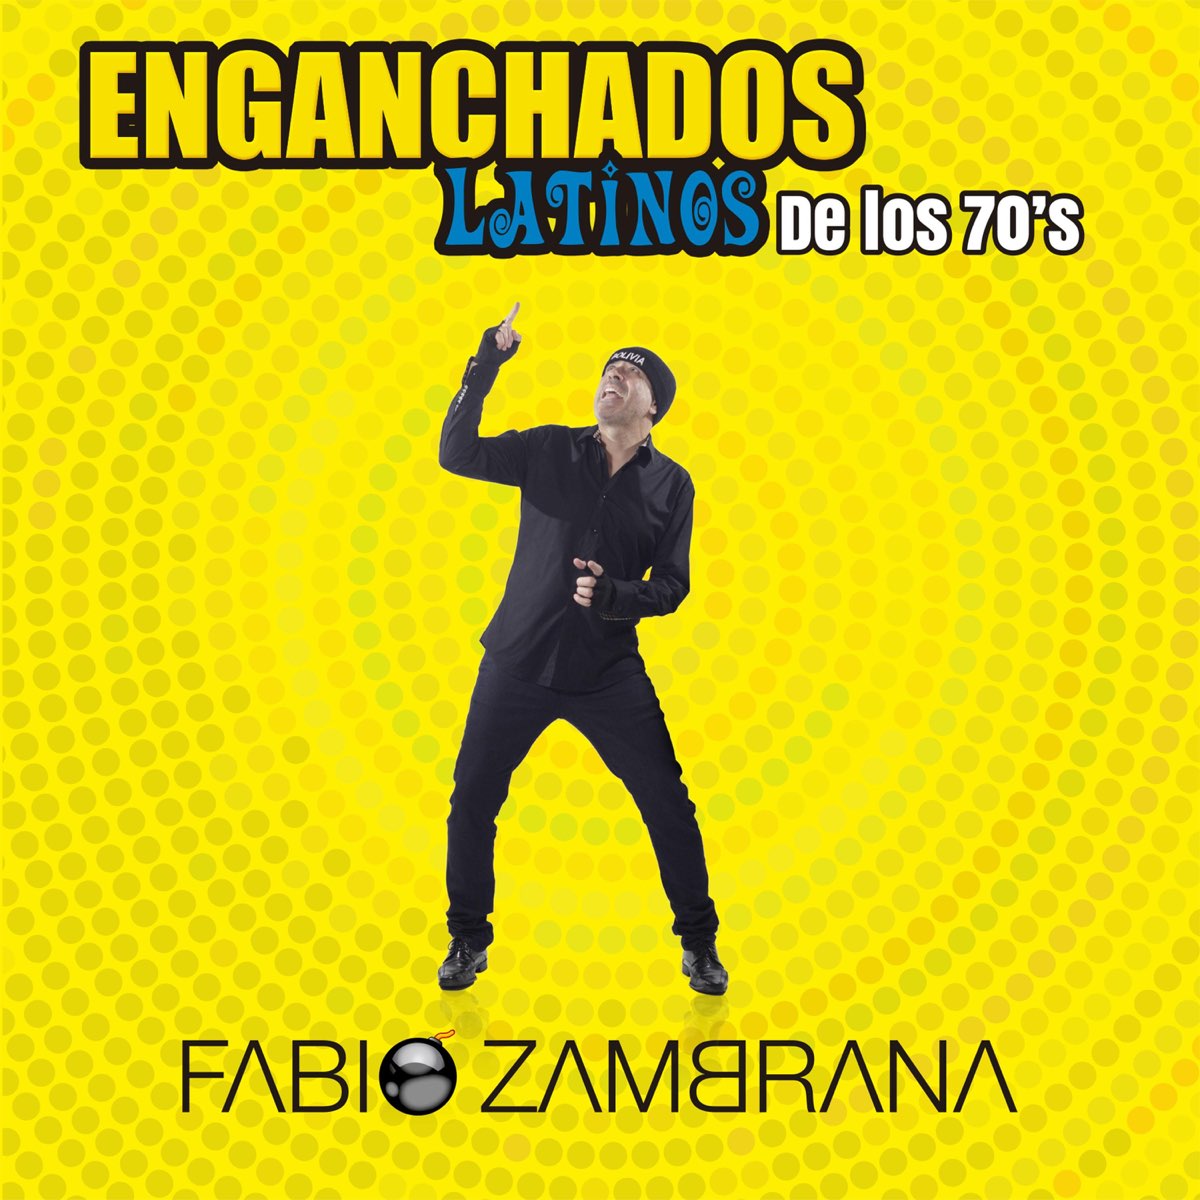 Enganchados Latinos de los 70s - Single de Fabio Zambrana en Apple Music